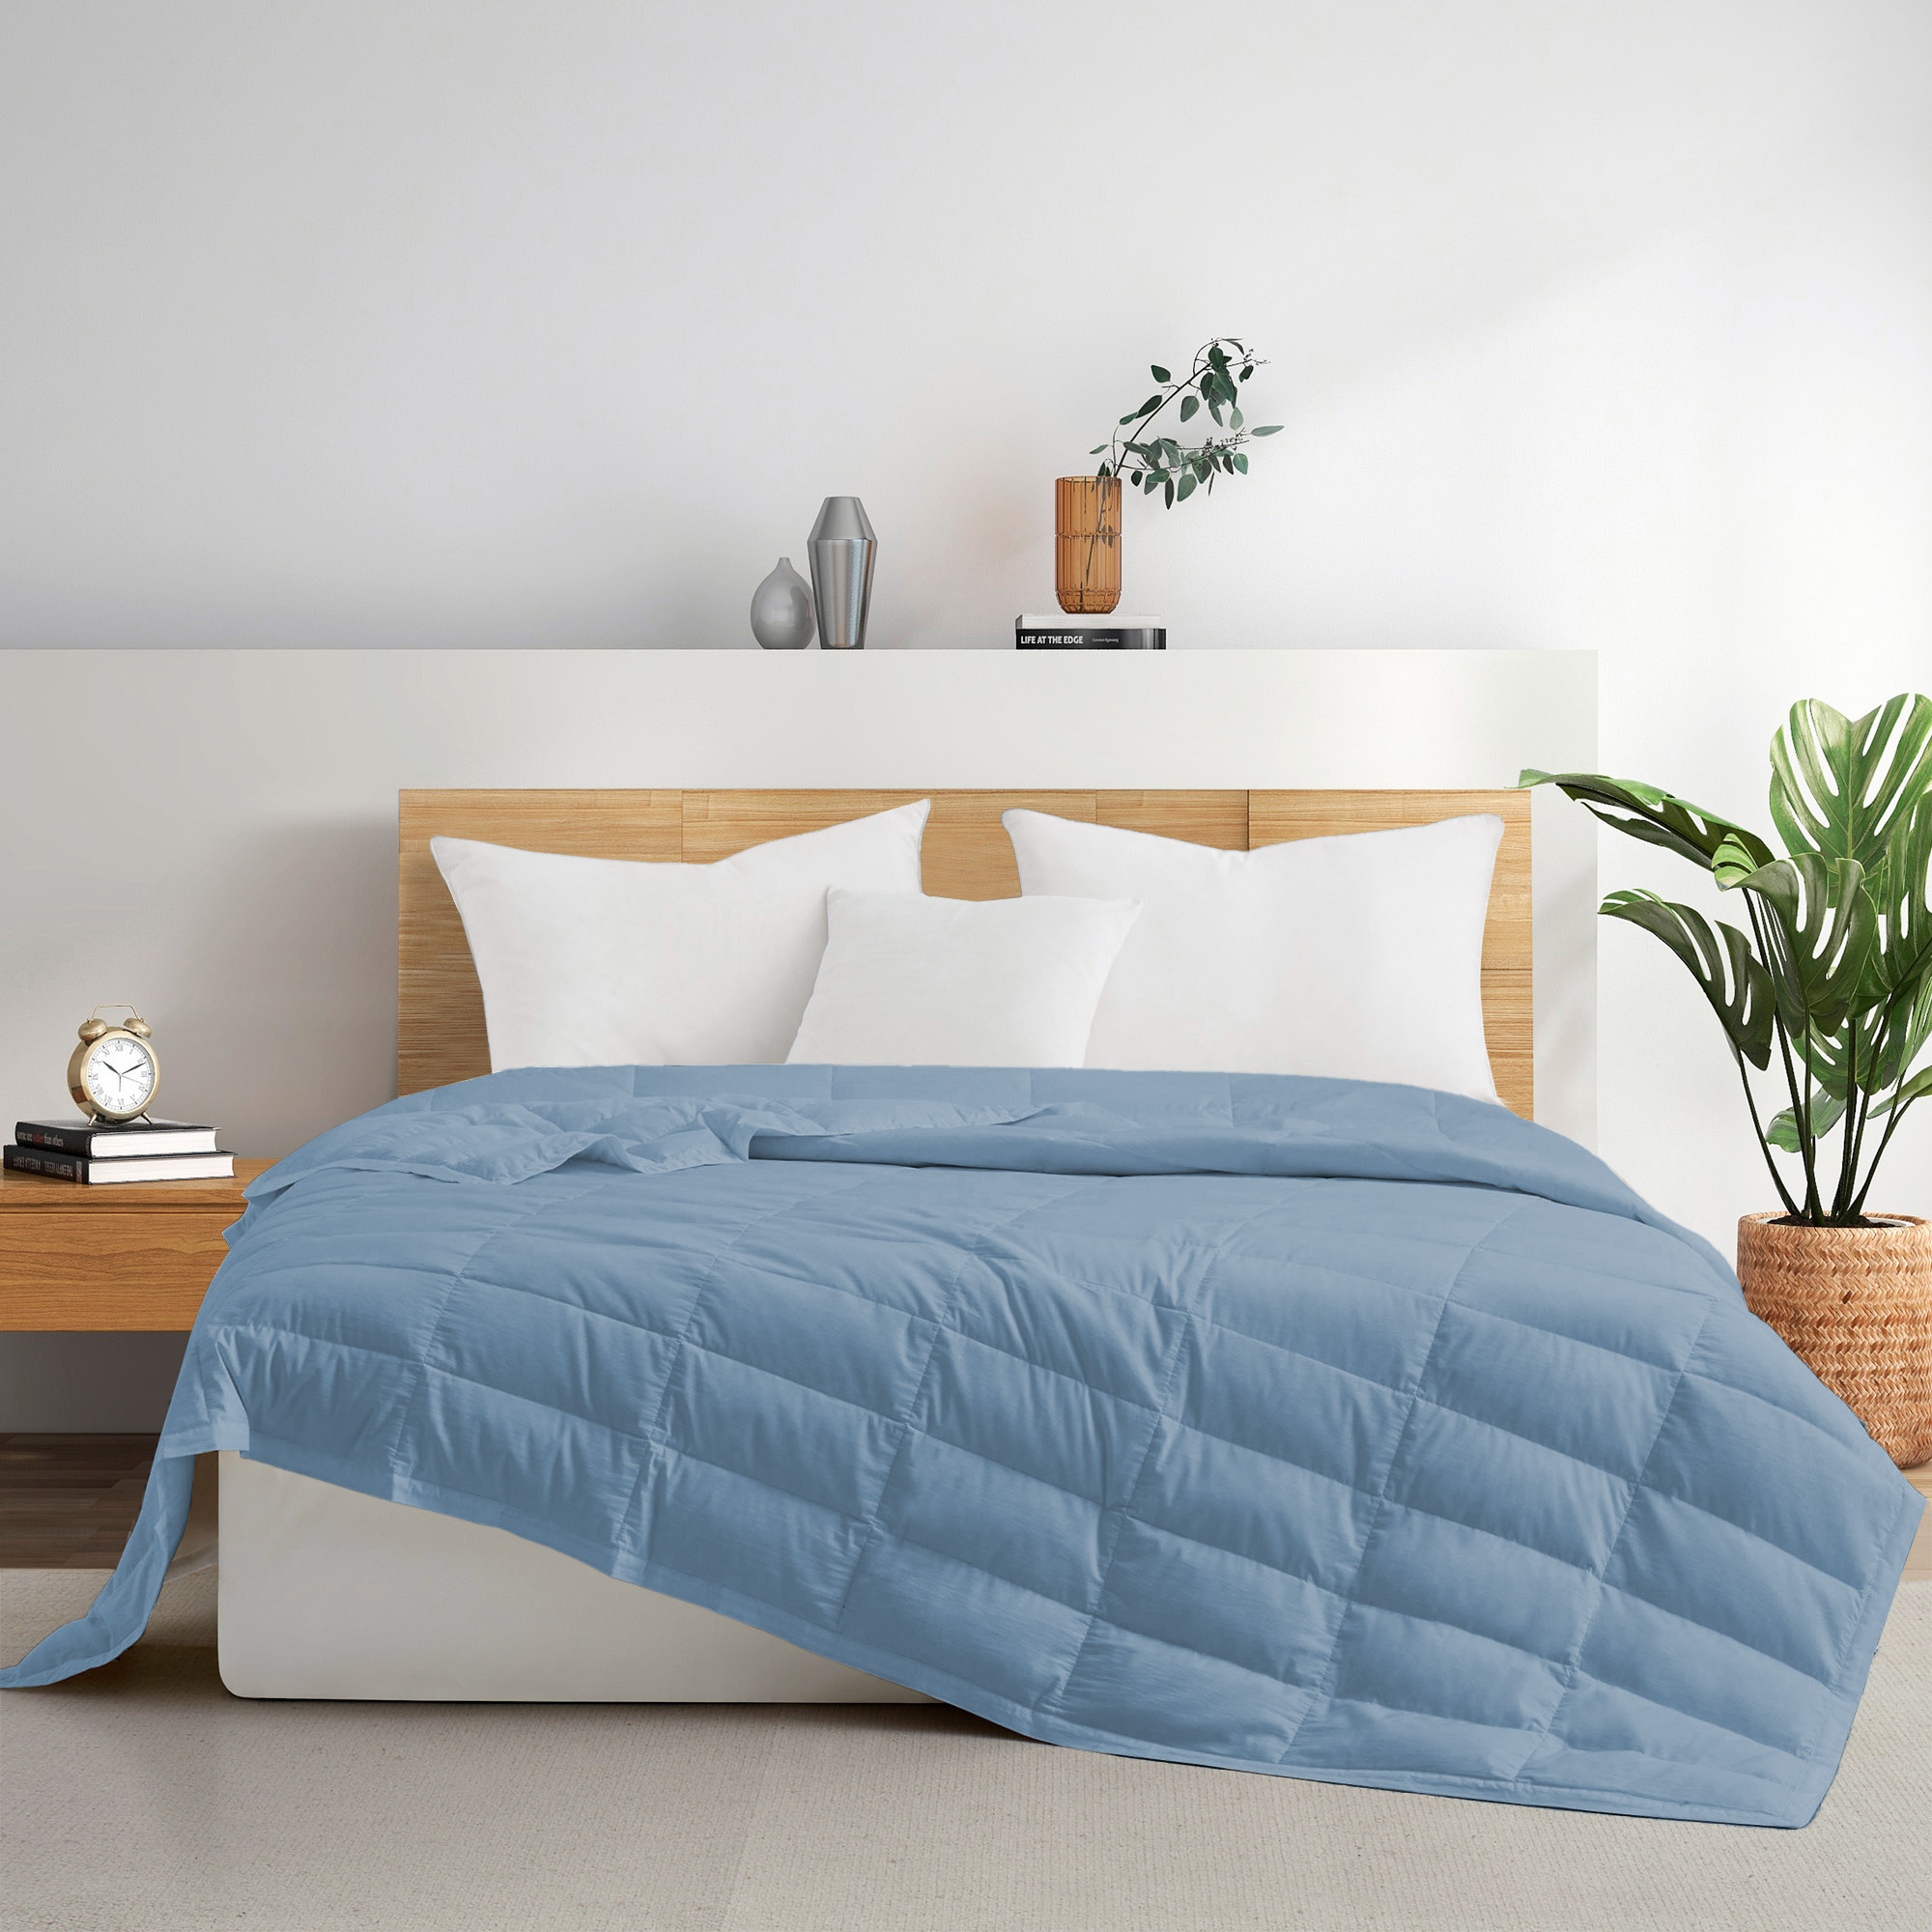 TENCELâ¢ Lyocell Lightweight Cooling Down Blanket-Luxurious Comfort Summer Blanket - Navy Blue, Full/Queen